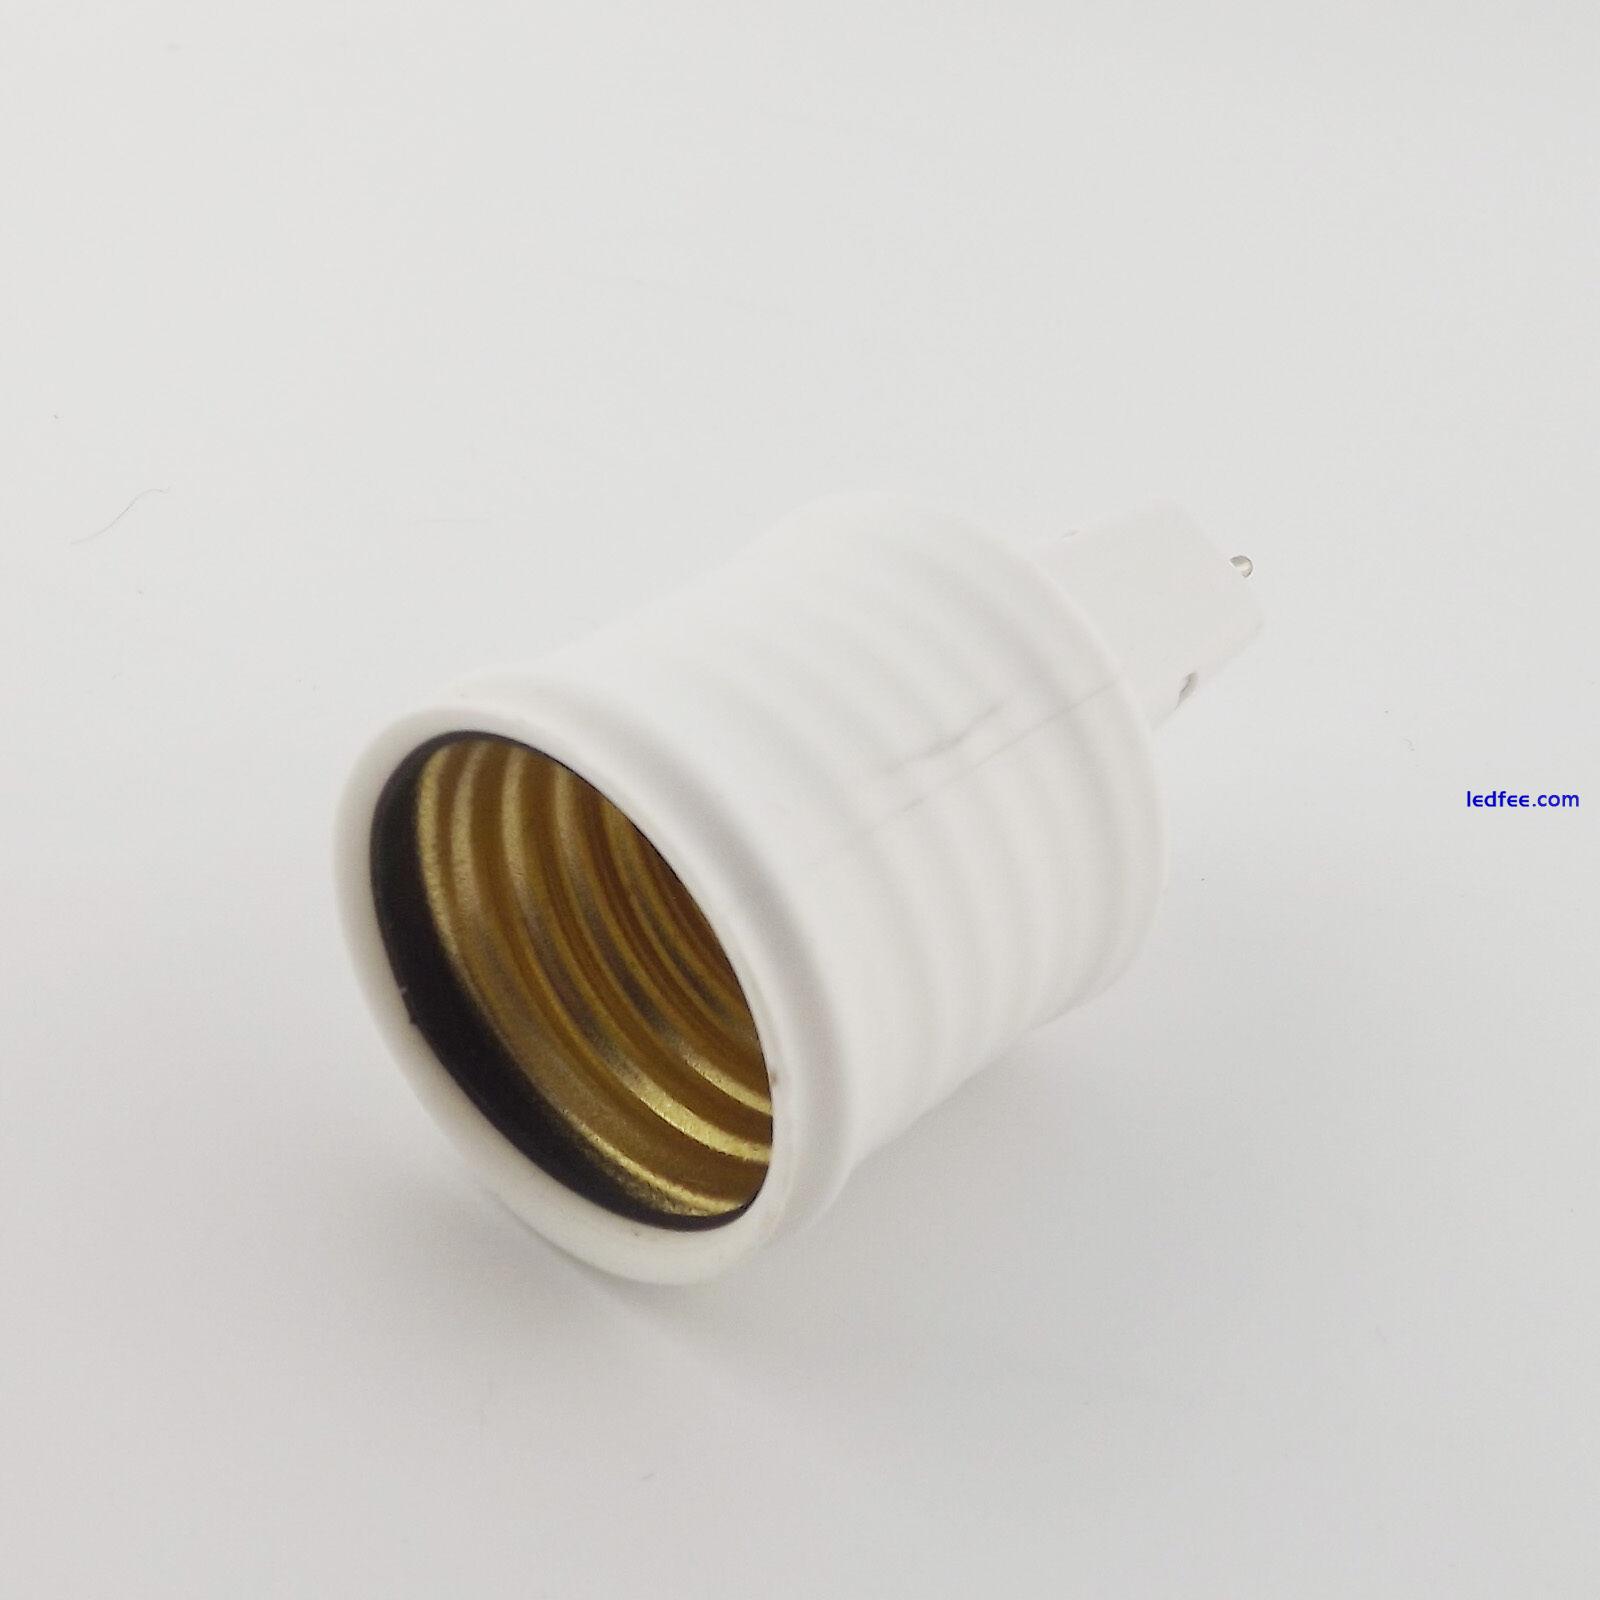 1pcs MR16 Lamp Socket to E27 Screw Thread LED Bulb Base Converter Adapter Holder 2 